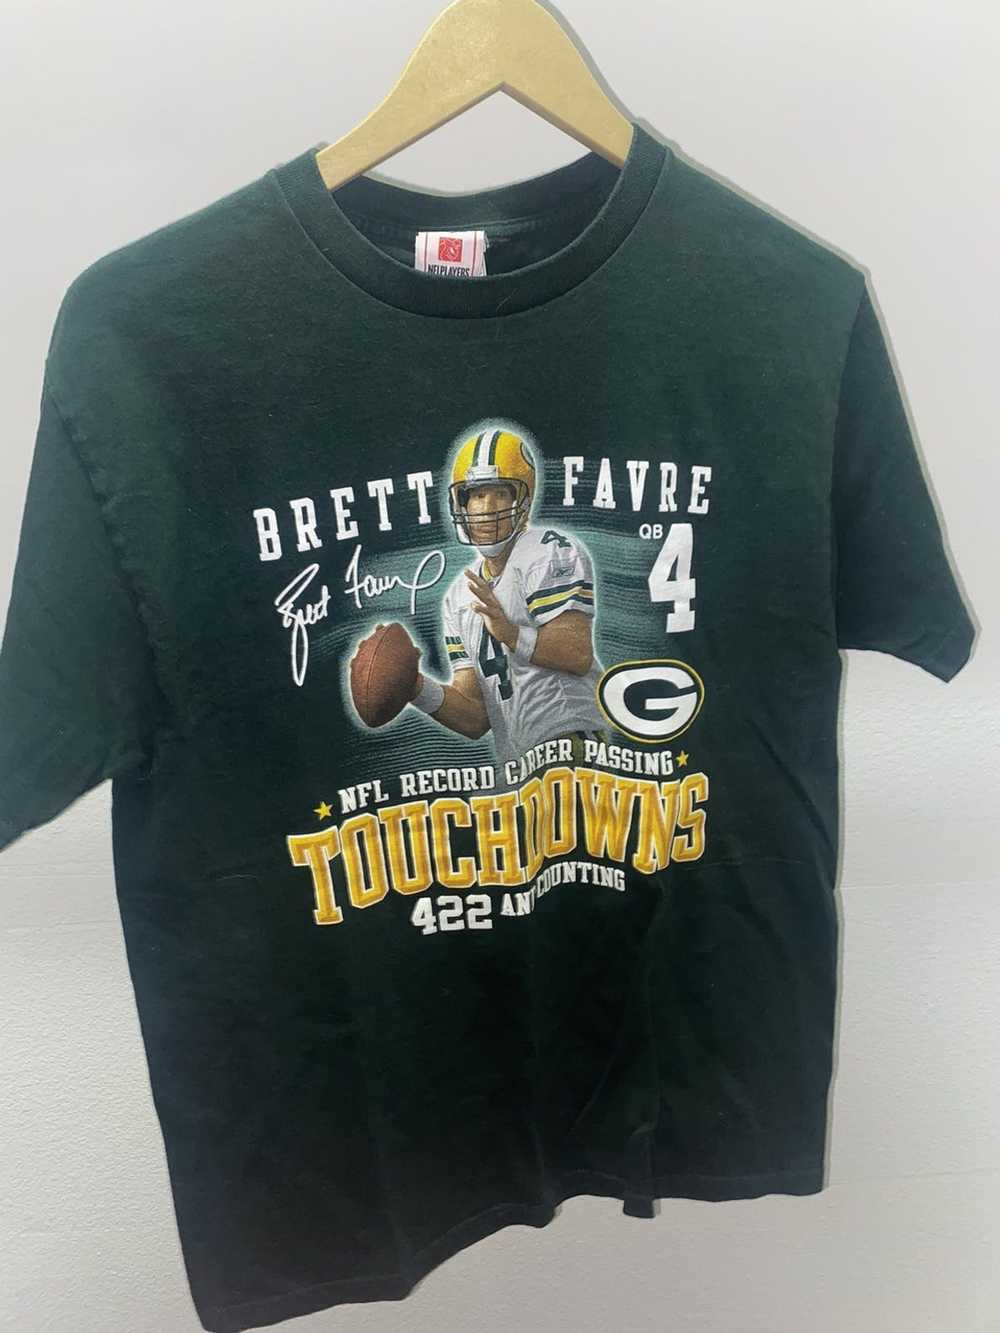 NFL Vintage Brett Favre t shirt medium - image 1